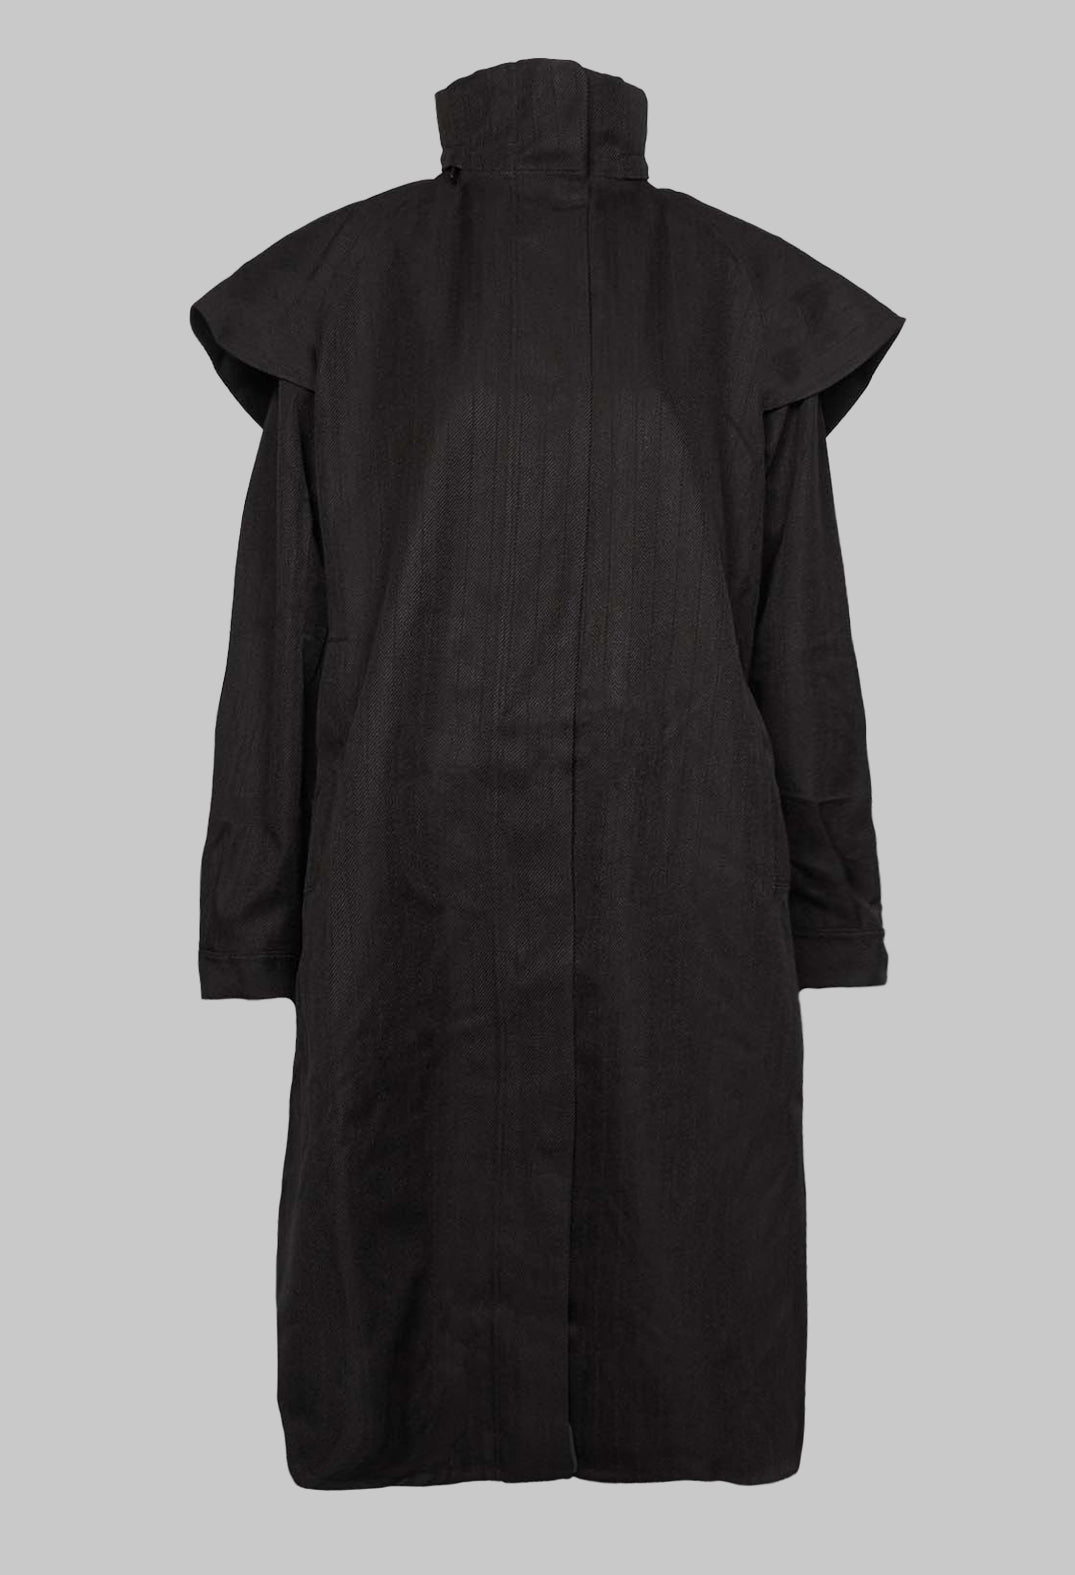 Tyfon Coat in Black Tweed